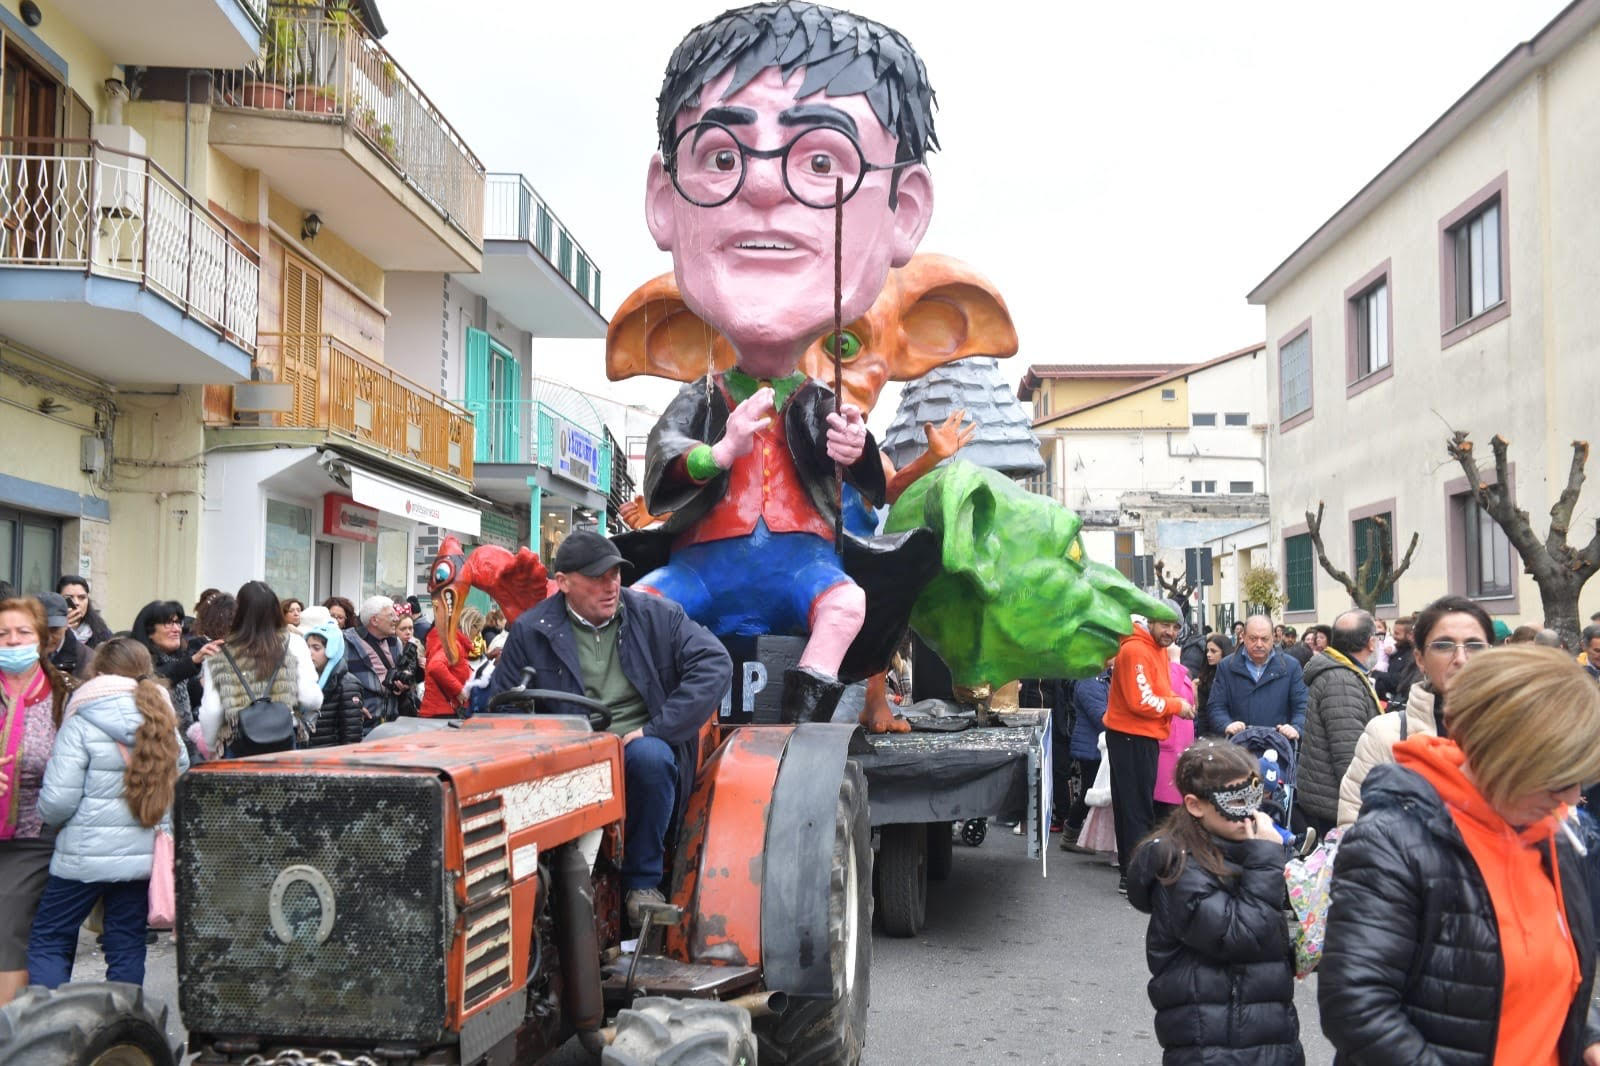 Carnevale a Quarto, tre giorni di festa tra sfilate in maschera, carri allegorici e spettacoli